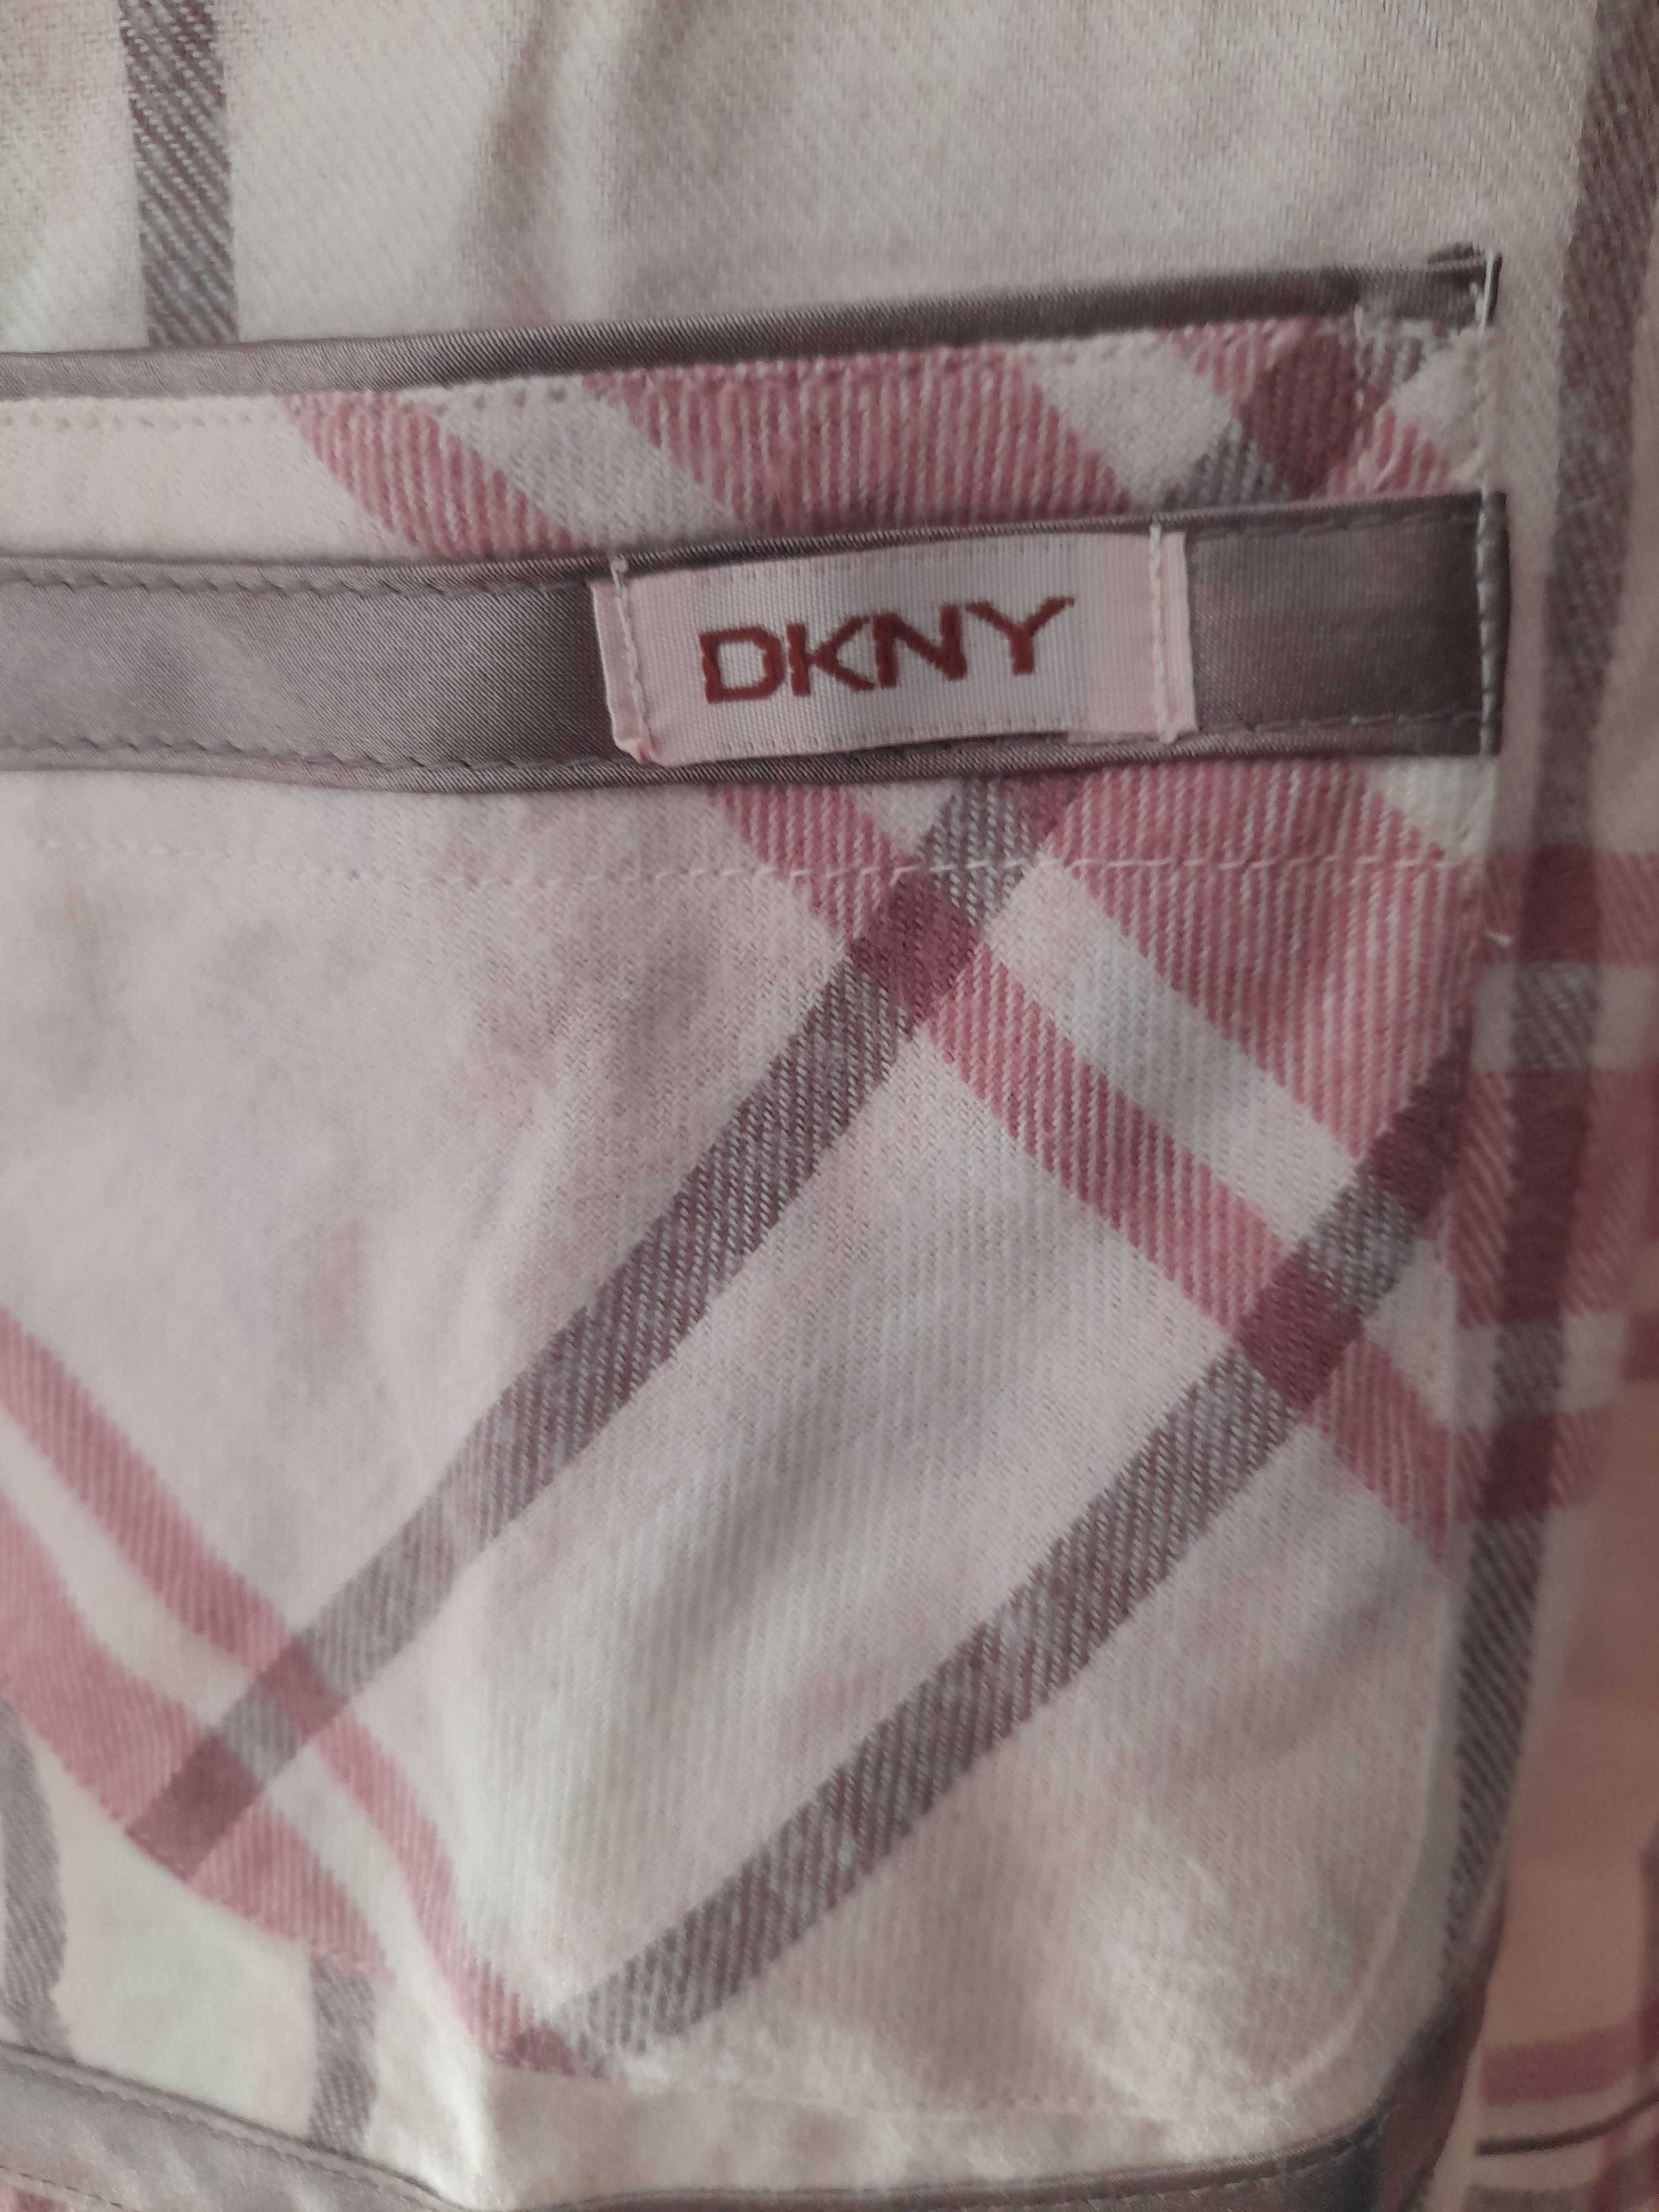 DKNY koszula nocna krata M nowa oryginał 38 z metkami bawełna